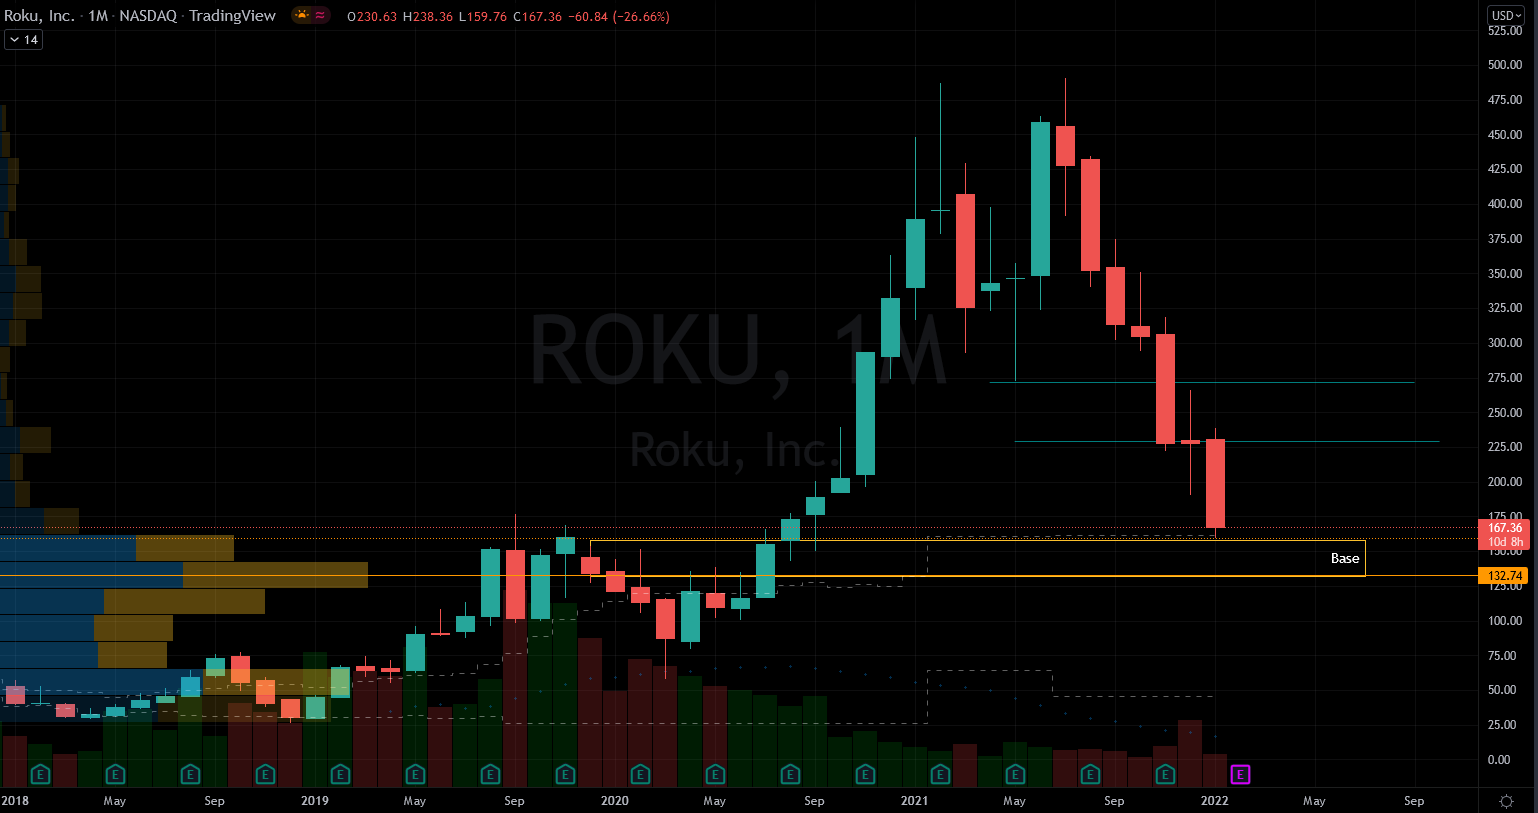 ROKU Stock Chart Showing Base Below